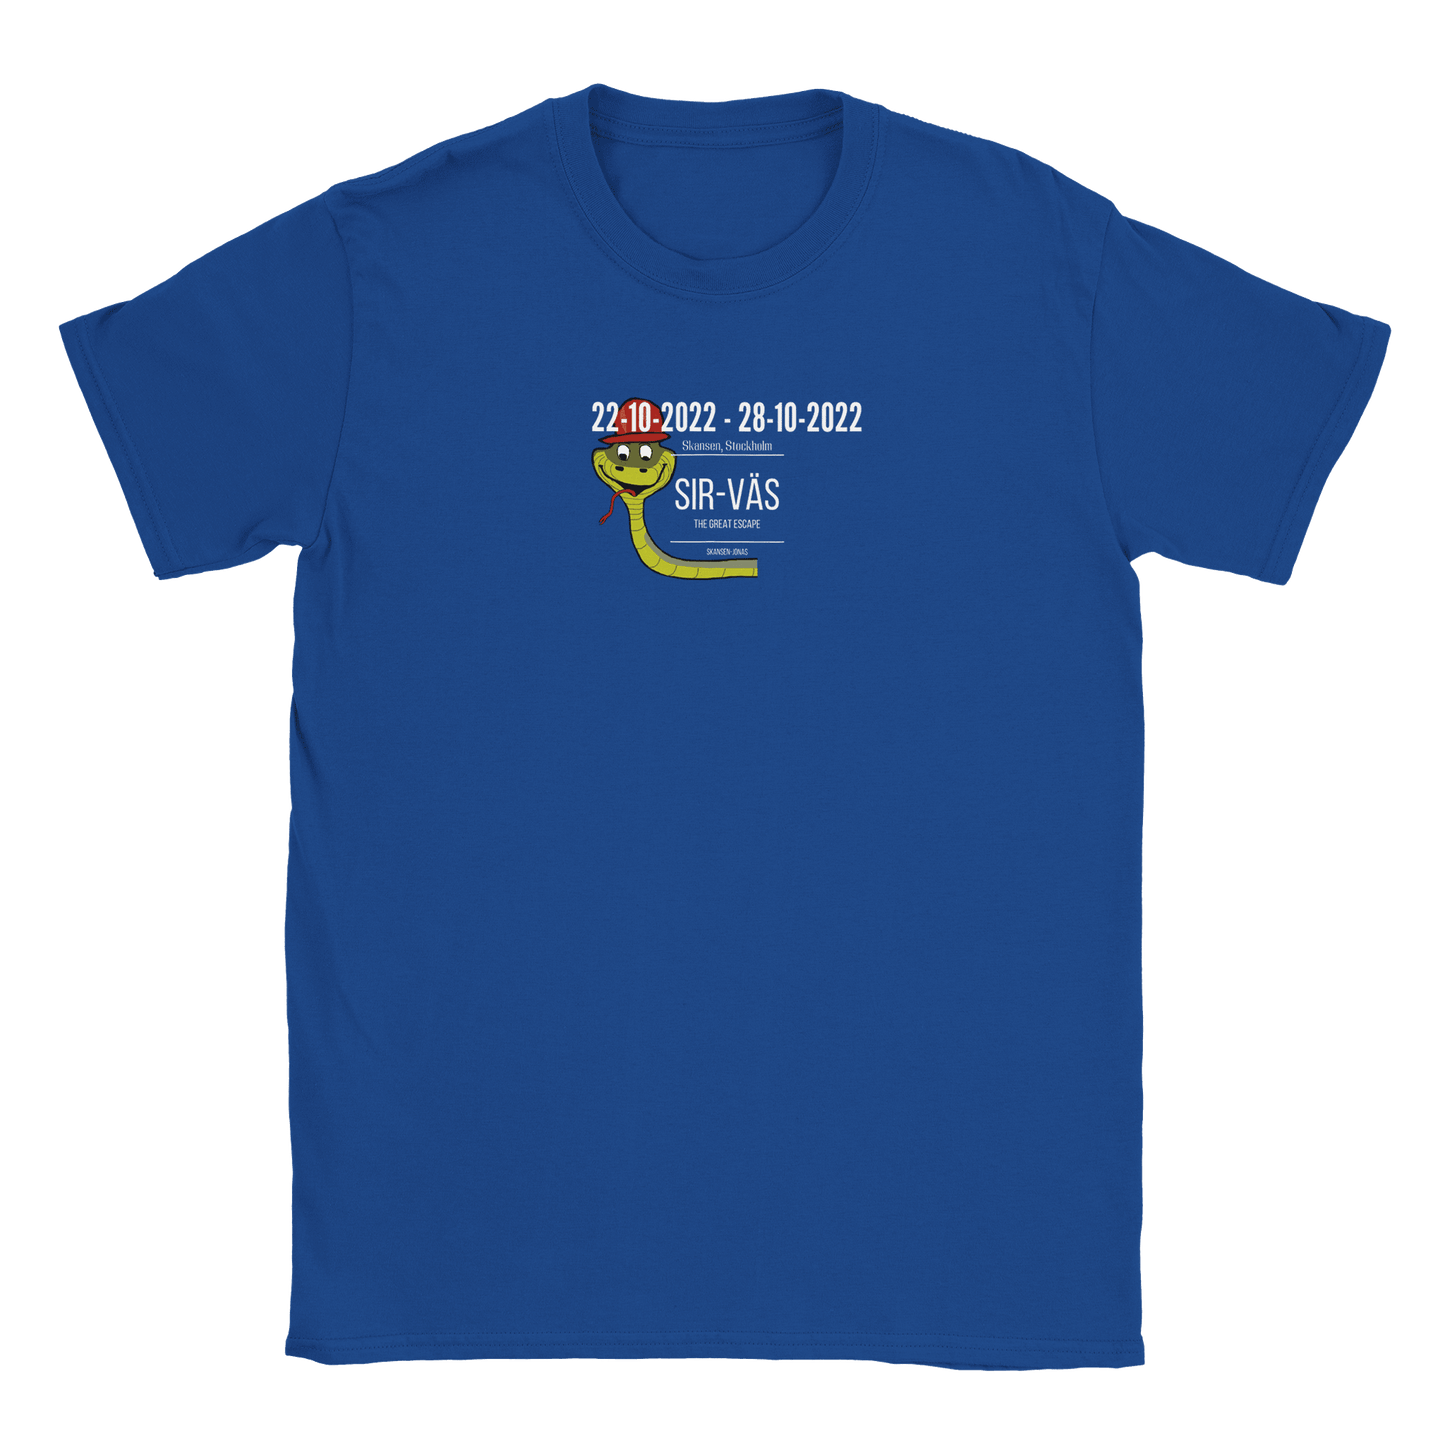 Sir-Väs - T-shirt Royal